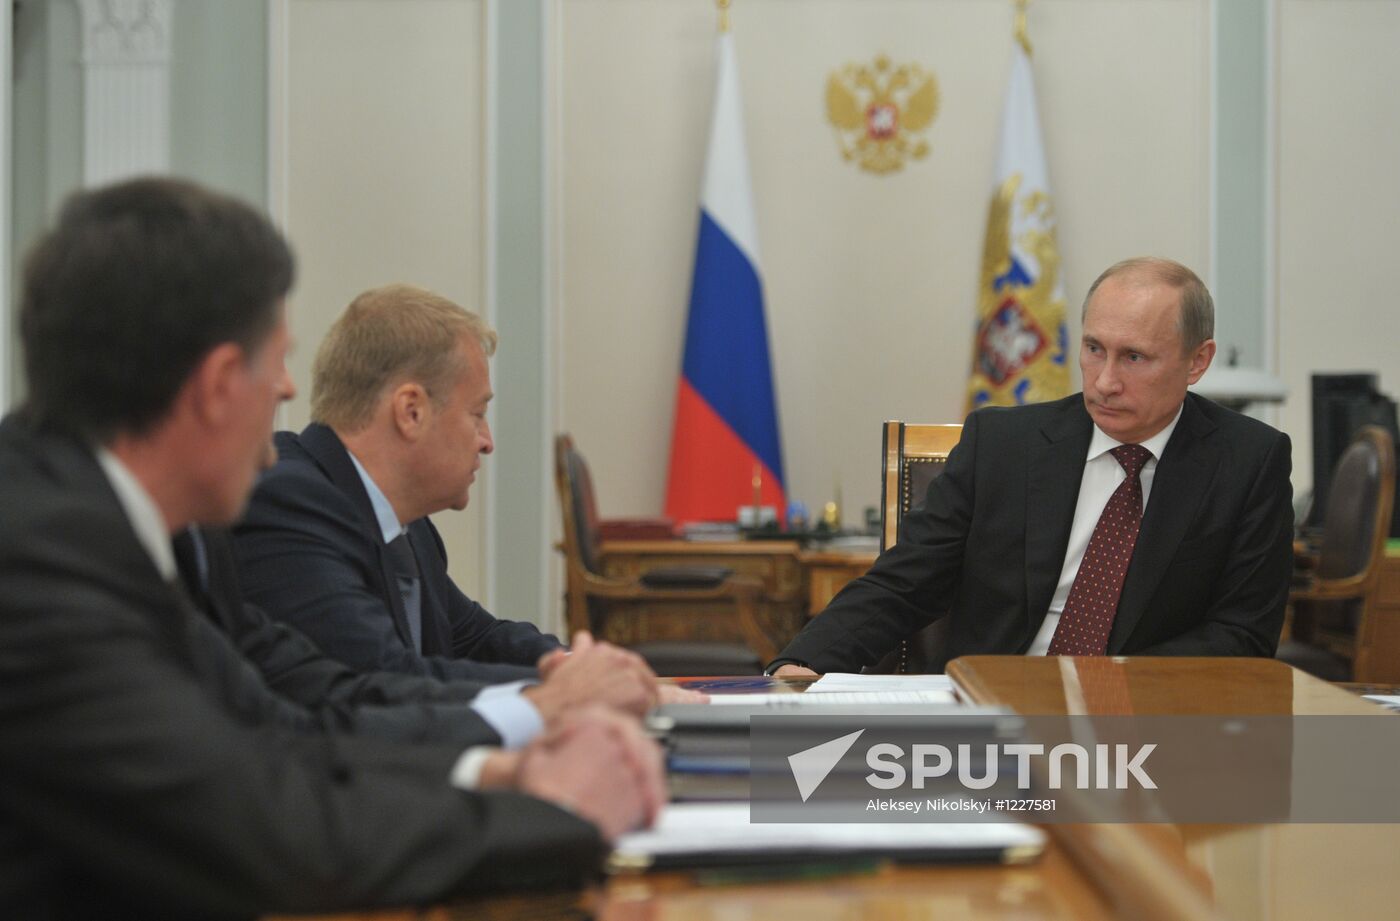 Vladimir Putin meets with Leonid Markelov